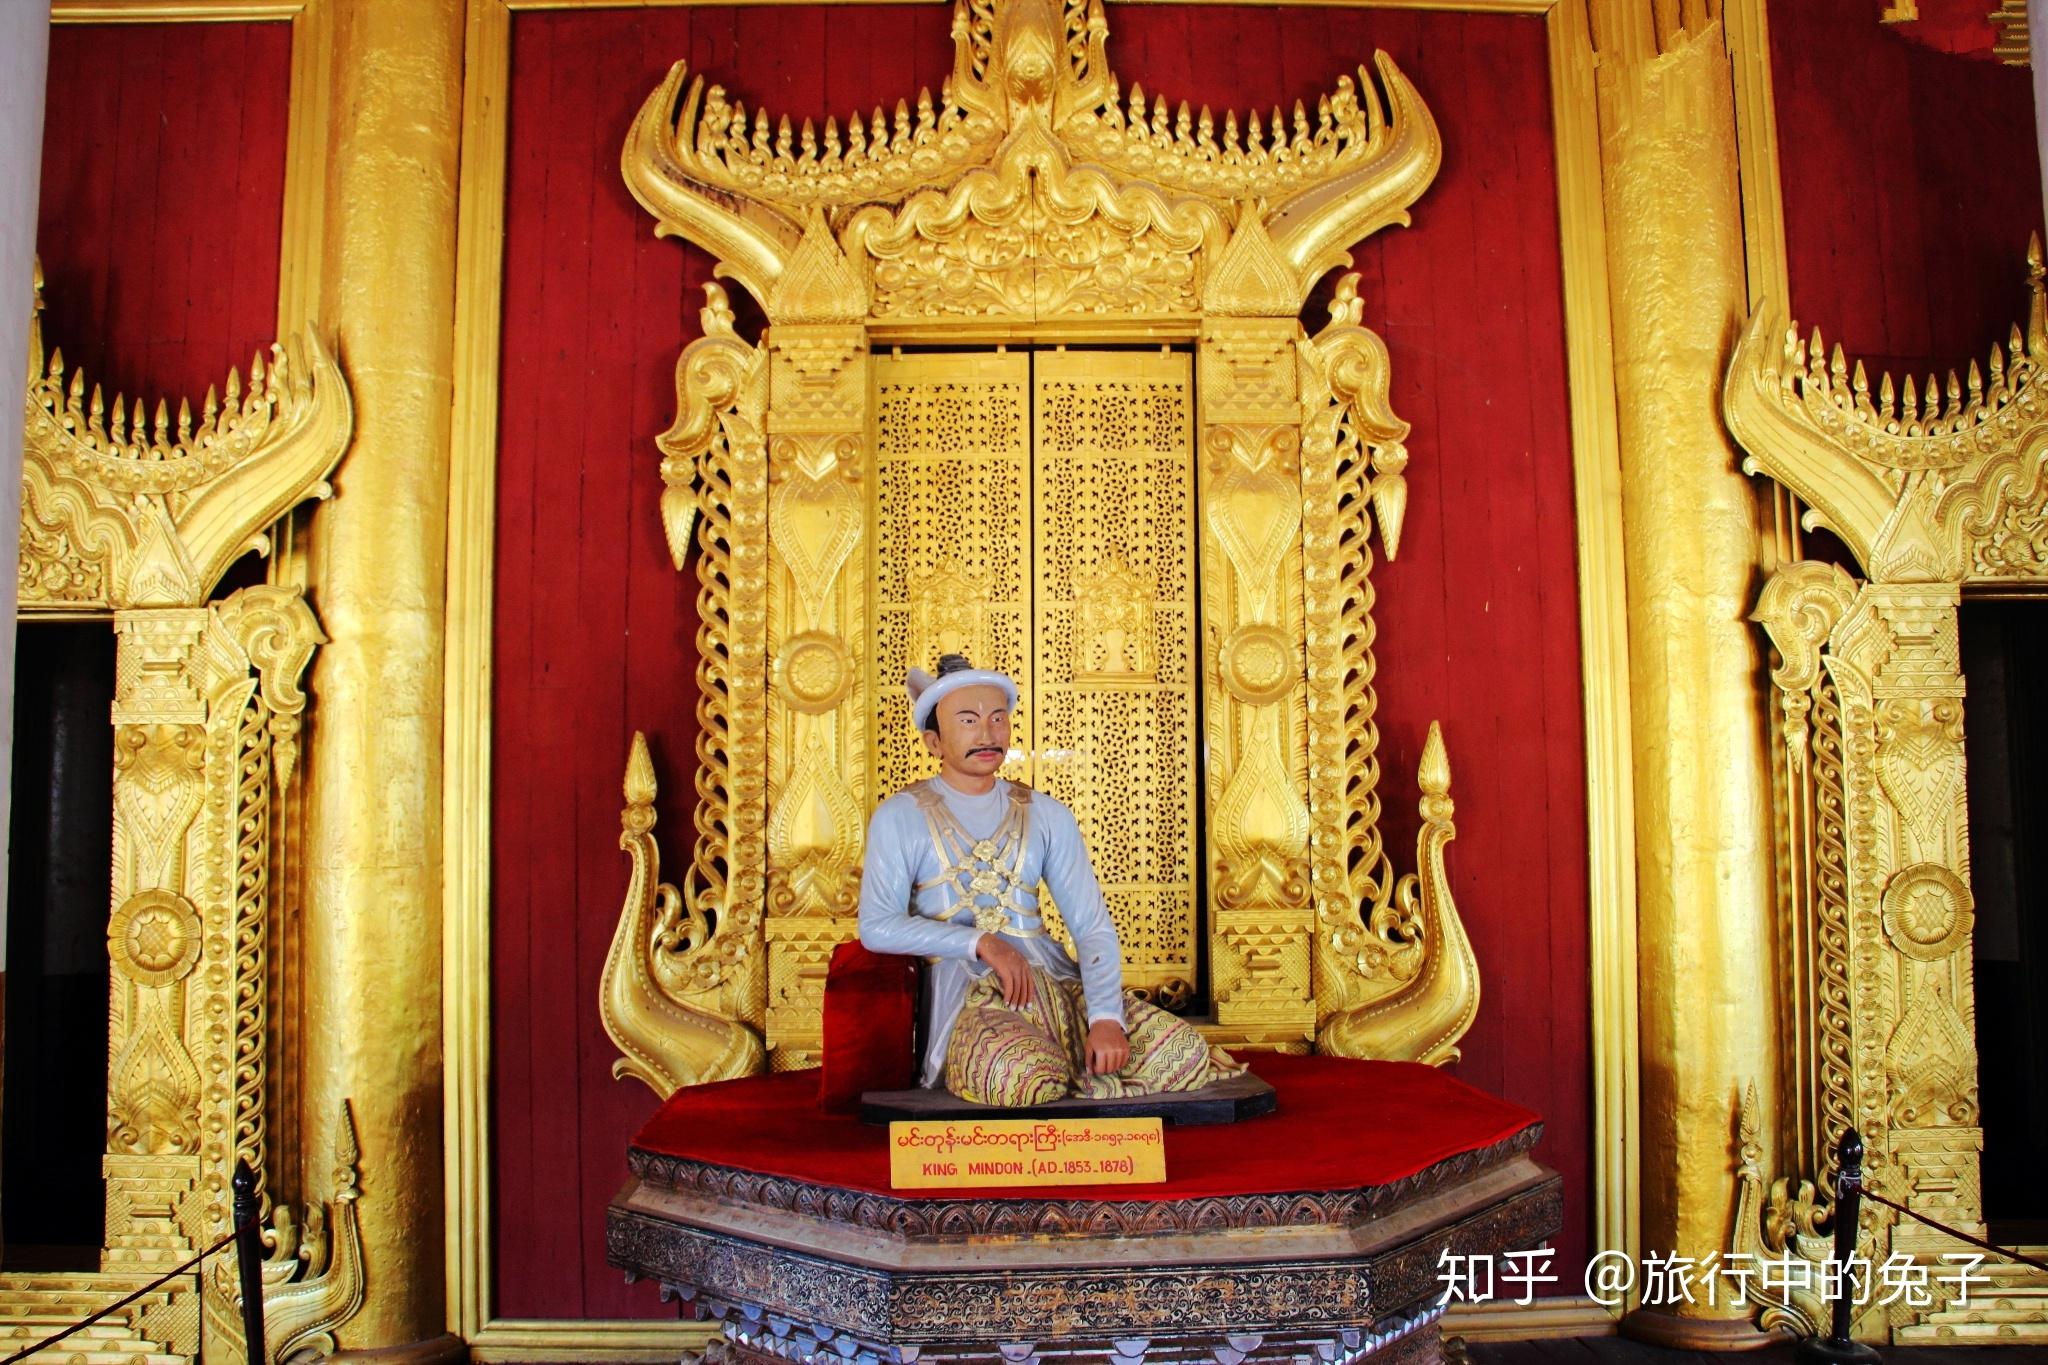 它就是缅甸最后一个王朝贡榜王朝的皇宫——曼德勒皇宫